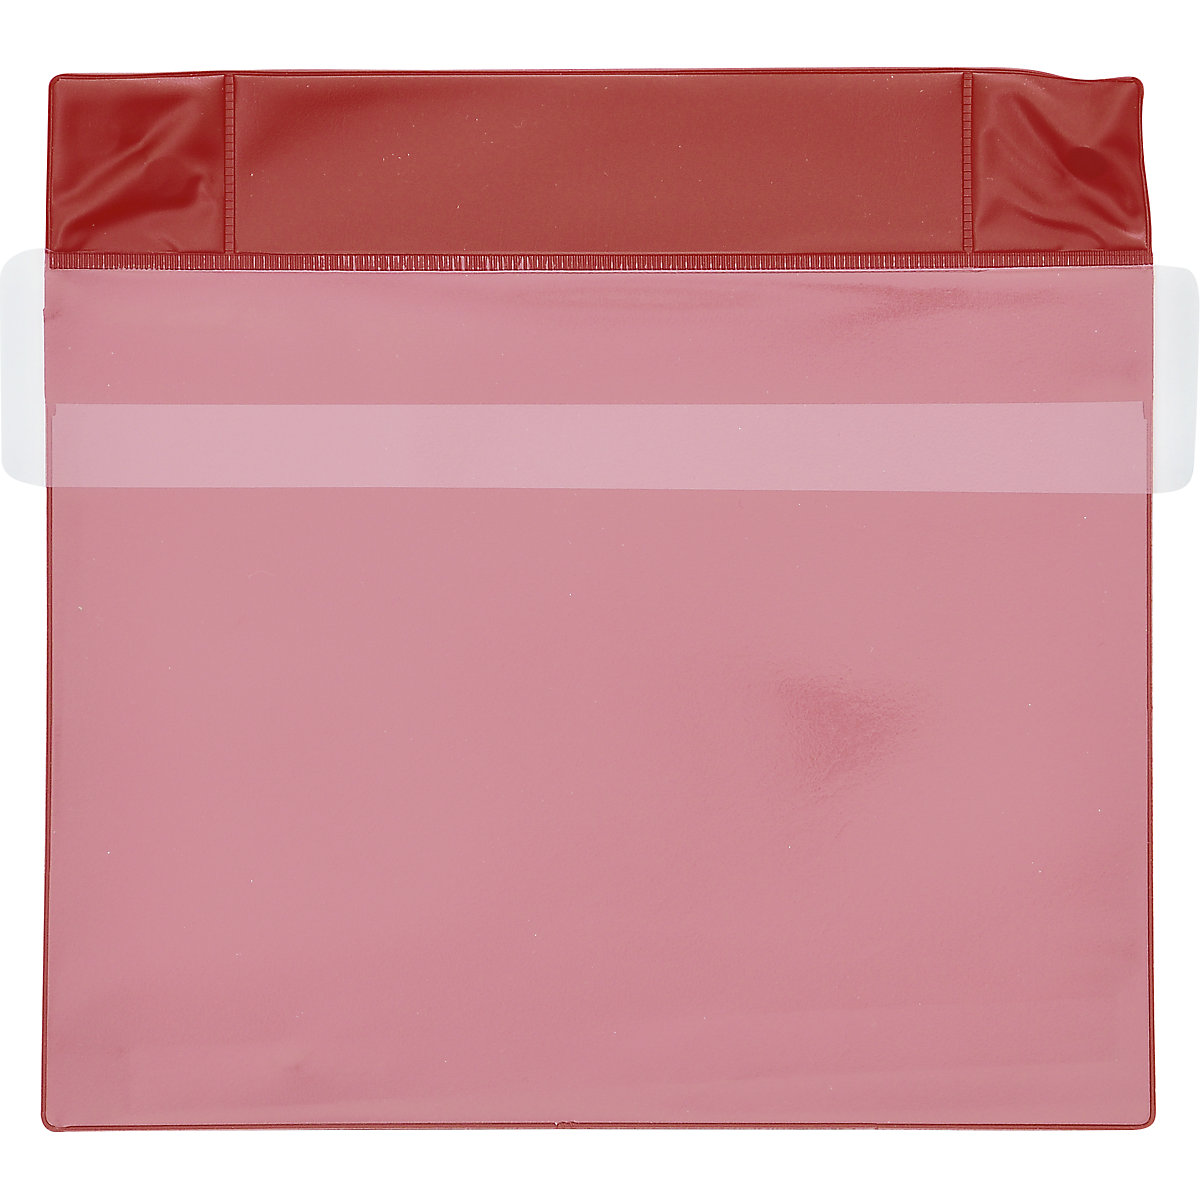 Pochettes magnétiques en néodyme, format horizontal, avec rabat de protection contre la pluie, lot de 25, rouge, format A5, à partir de 1 lot